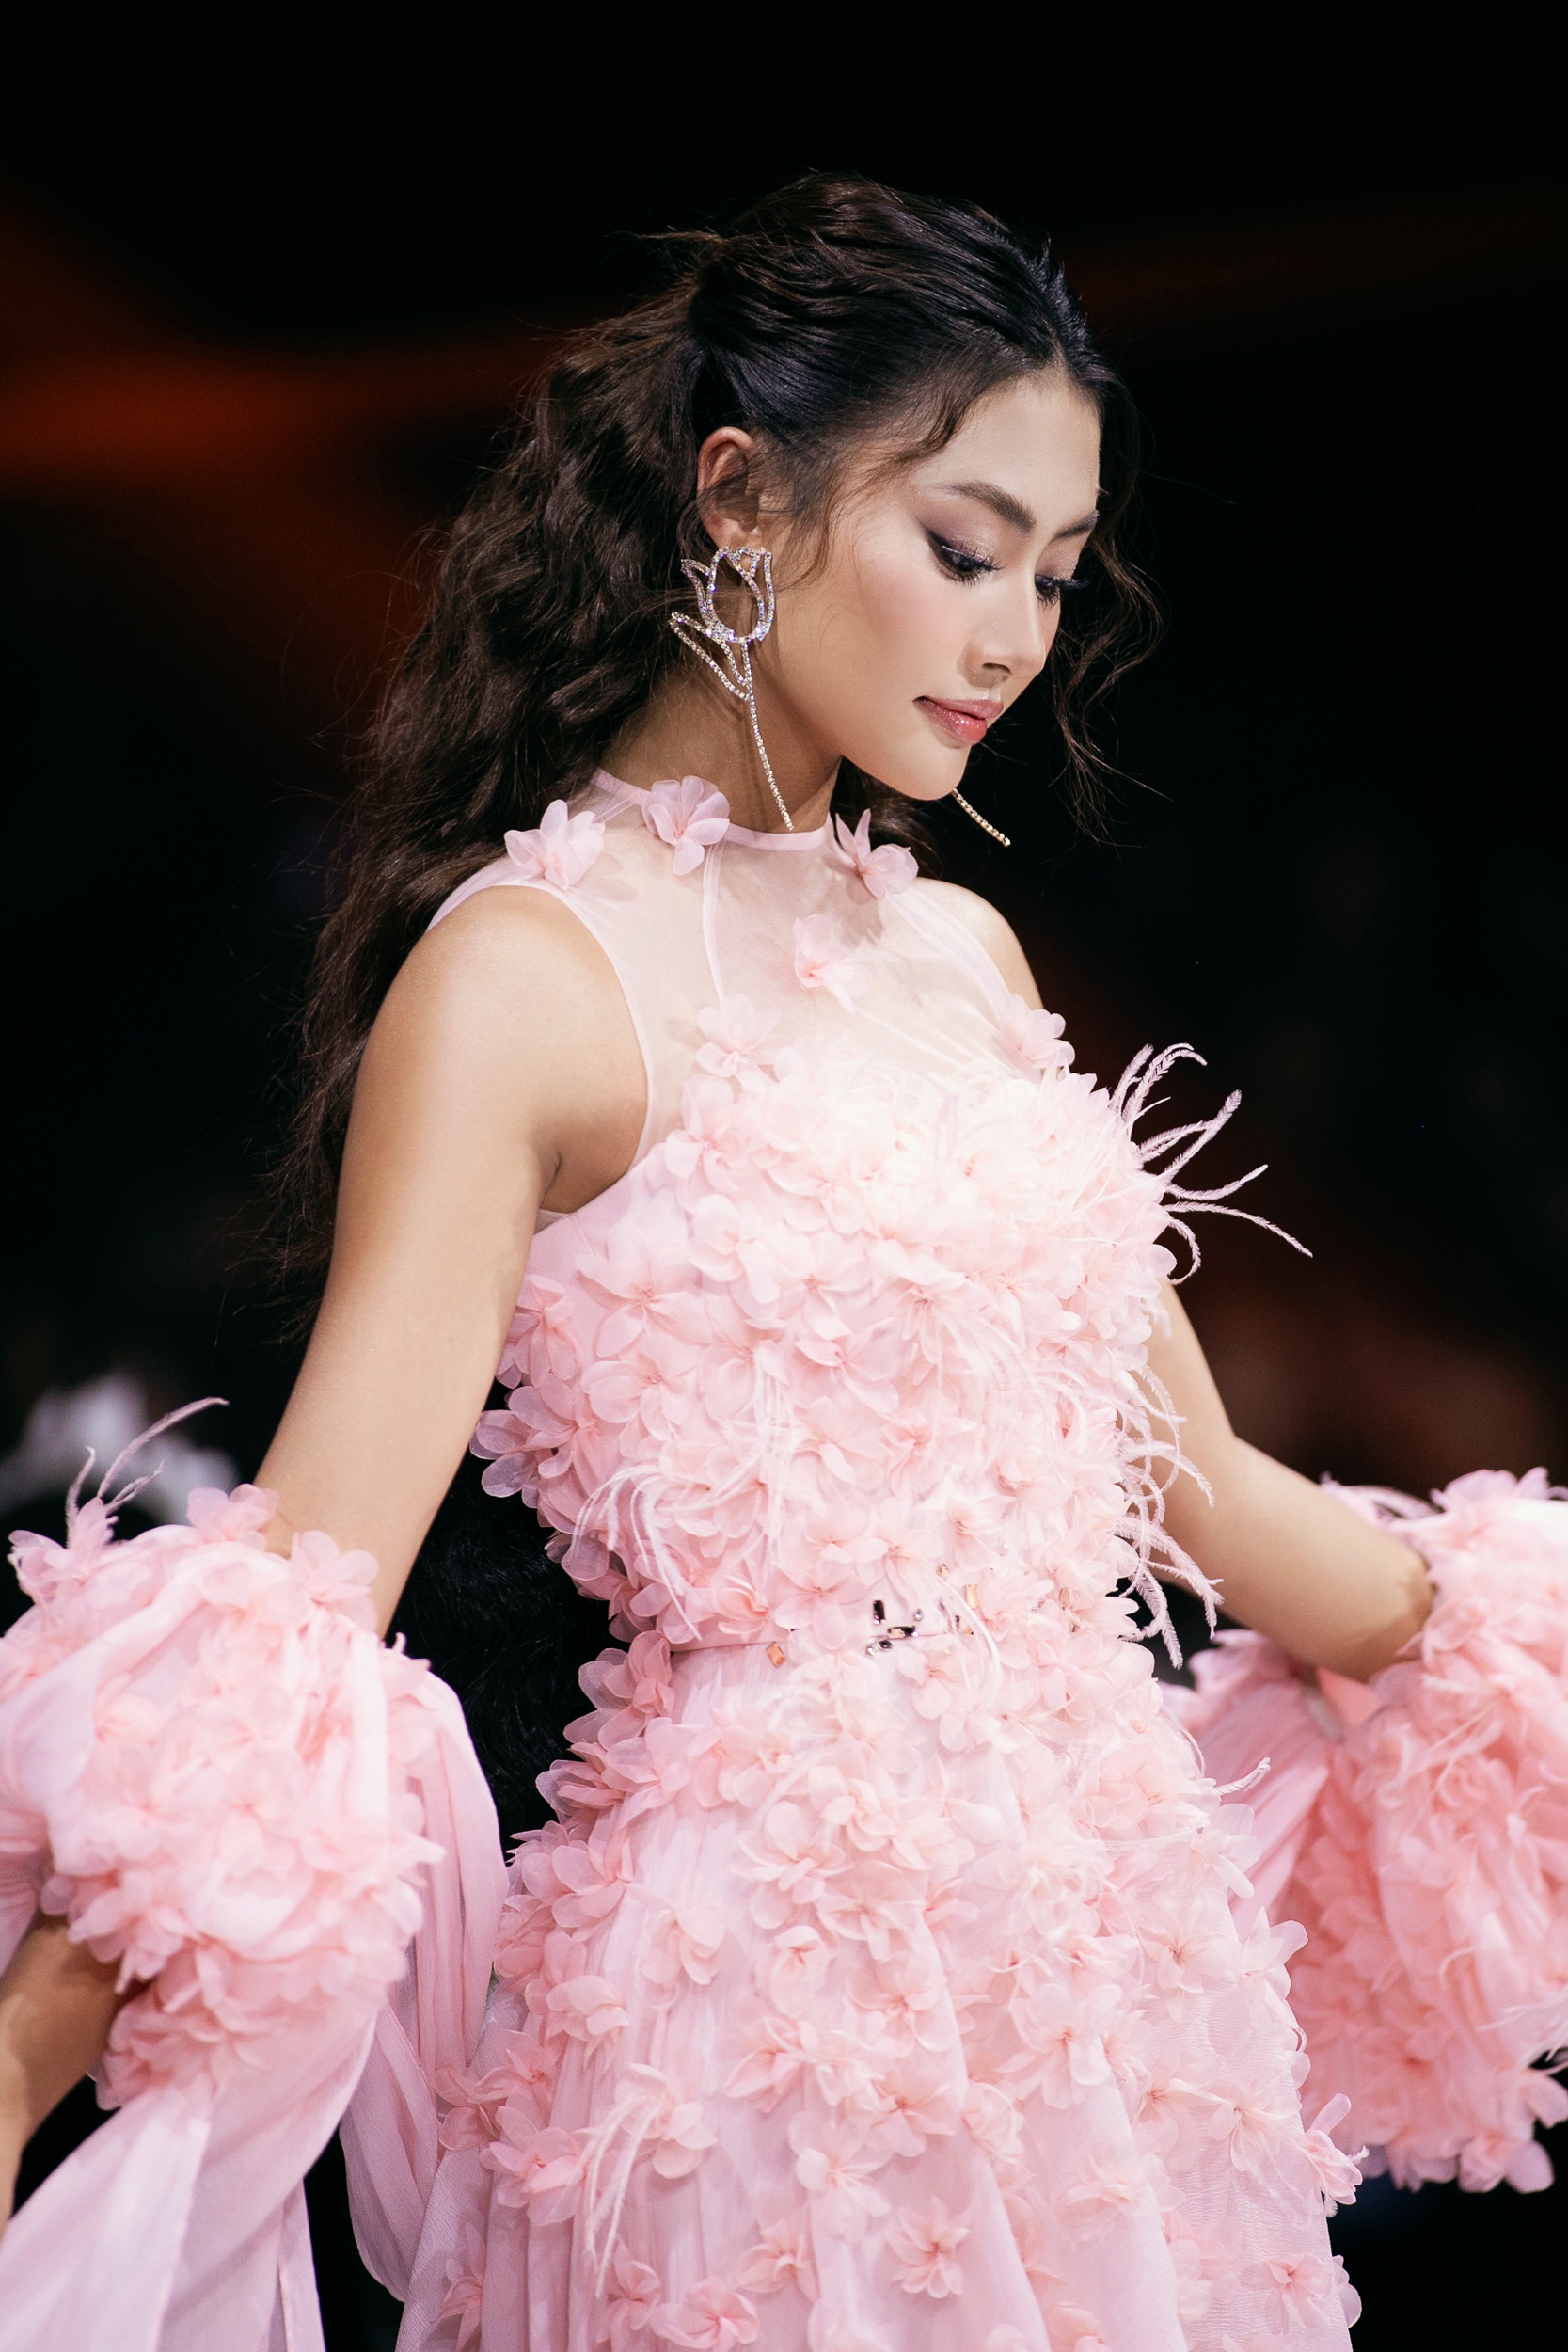 HHen Niê, Quỳnh Châu catwalk trong trang phục cảm hứng mây trời - 6